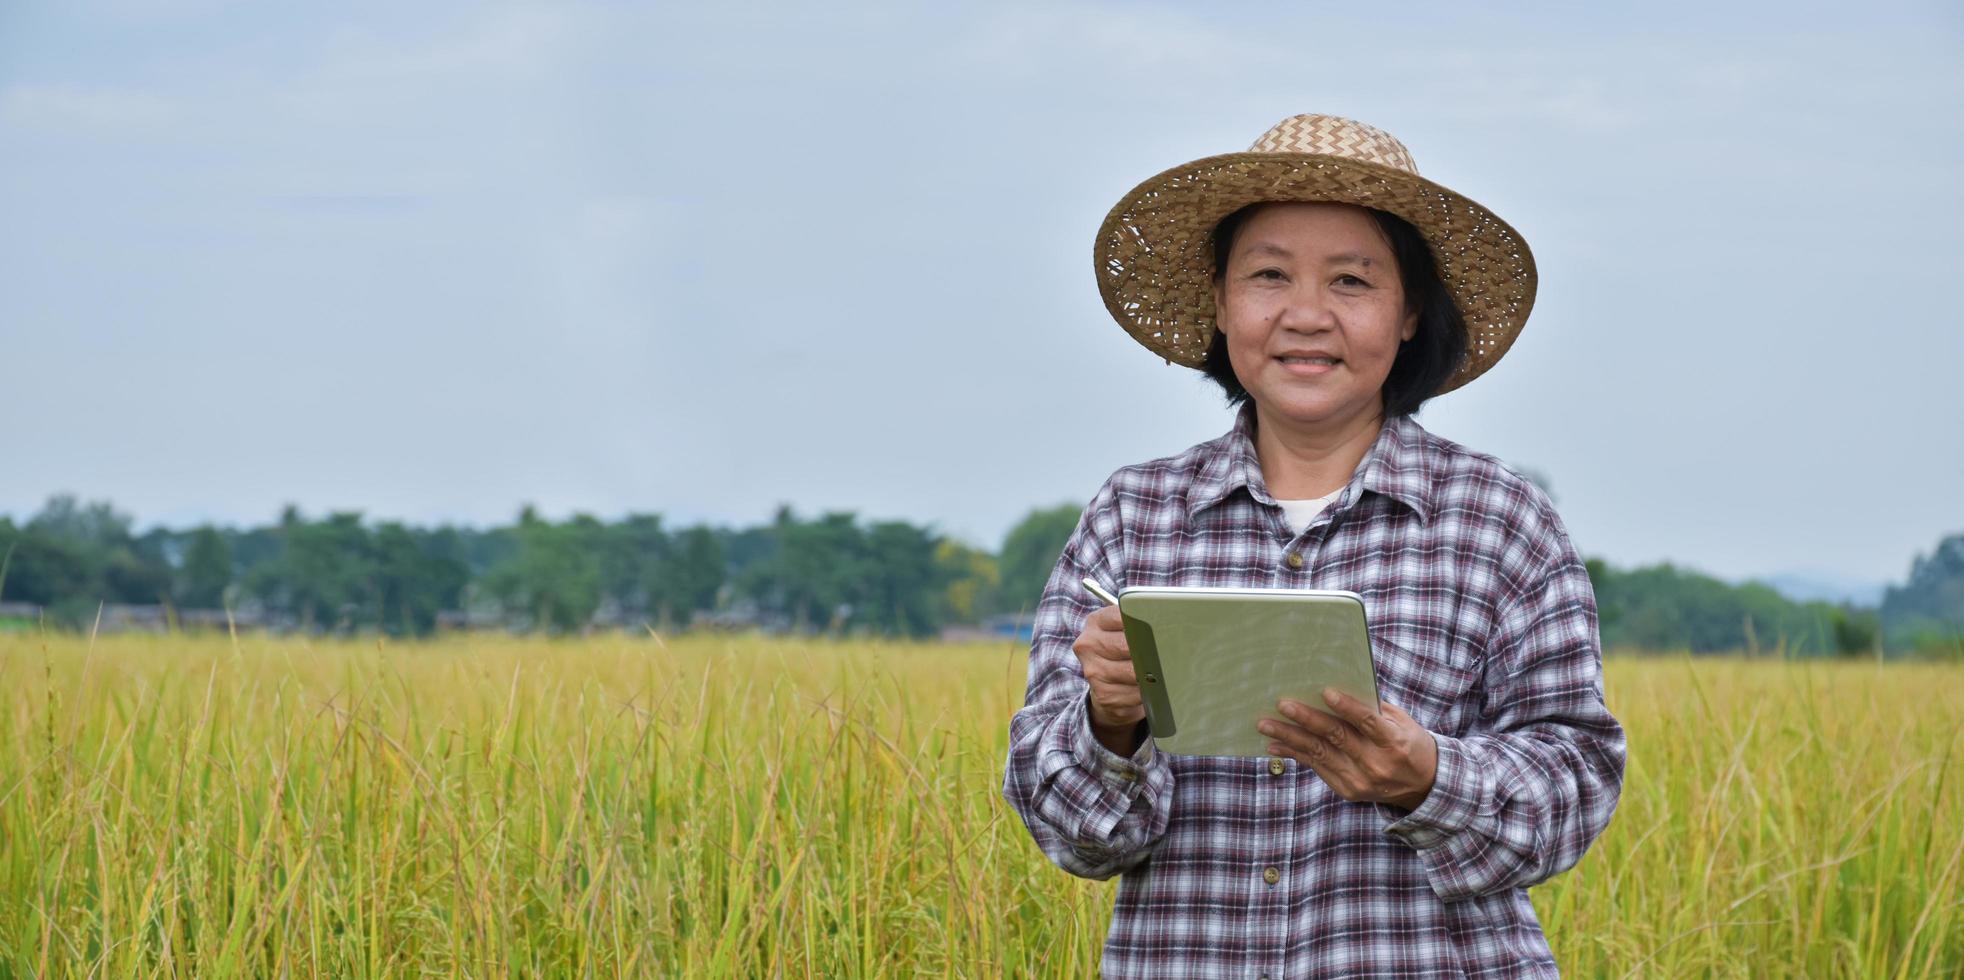 portrait d'une femme asiatique âgée portant un chapeau, tenant un taplet mobile et debout dans une rizière, mise au point douce et sélective, concept pour agriculteur intelligent et femme âgée heureuse dans sa propre vie photo